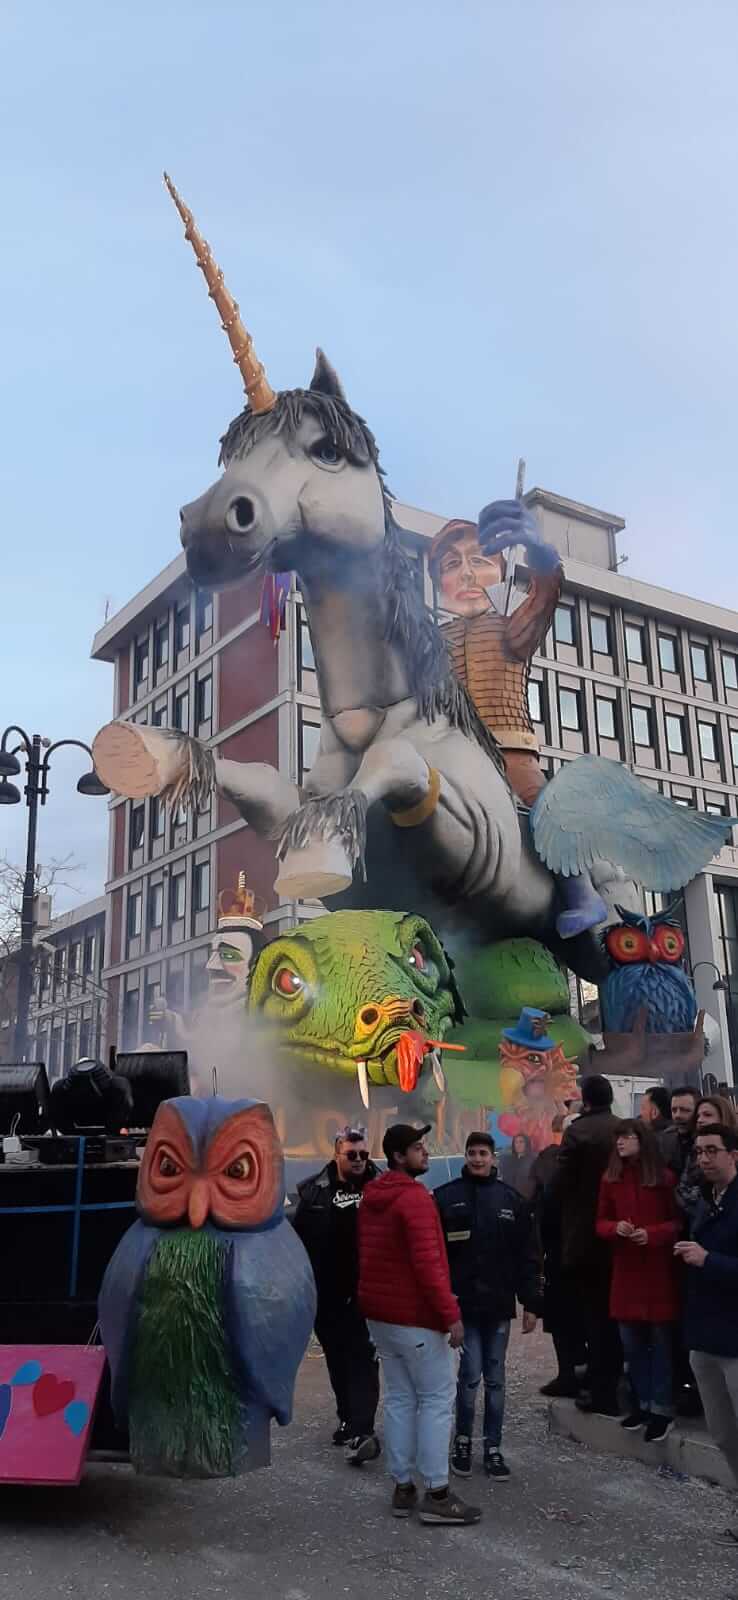 Larino, il Carnevale contro l'Omofobia - foto - WhatsApp Image 2020 02 27 at 17.40.48 1 1 - Gay.it